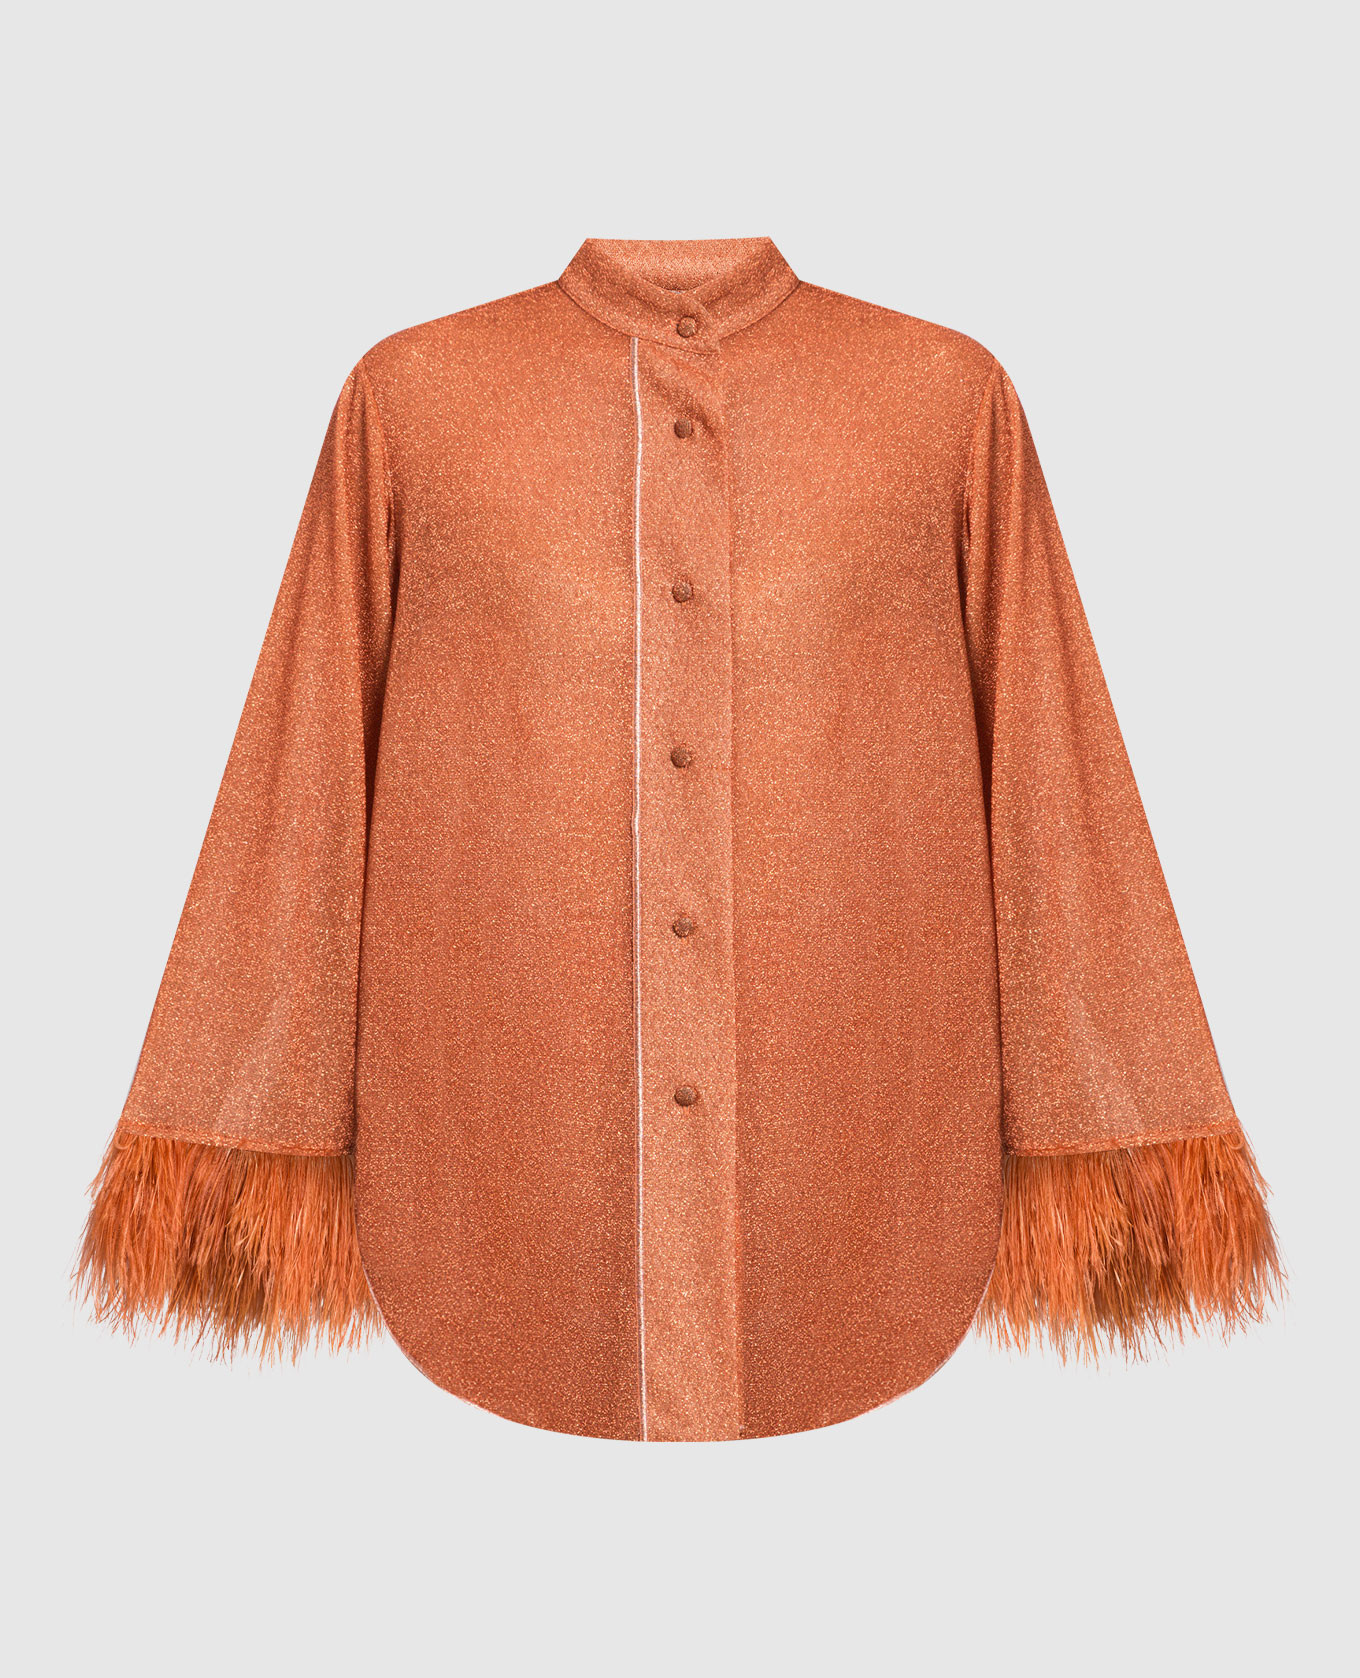 Оранжевая блуза HS22 Lumiere Plumage со страусиными перьями